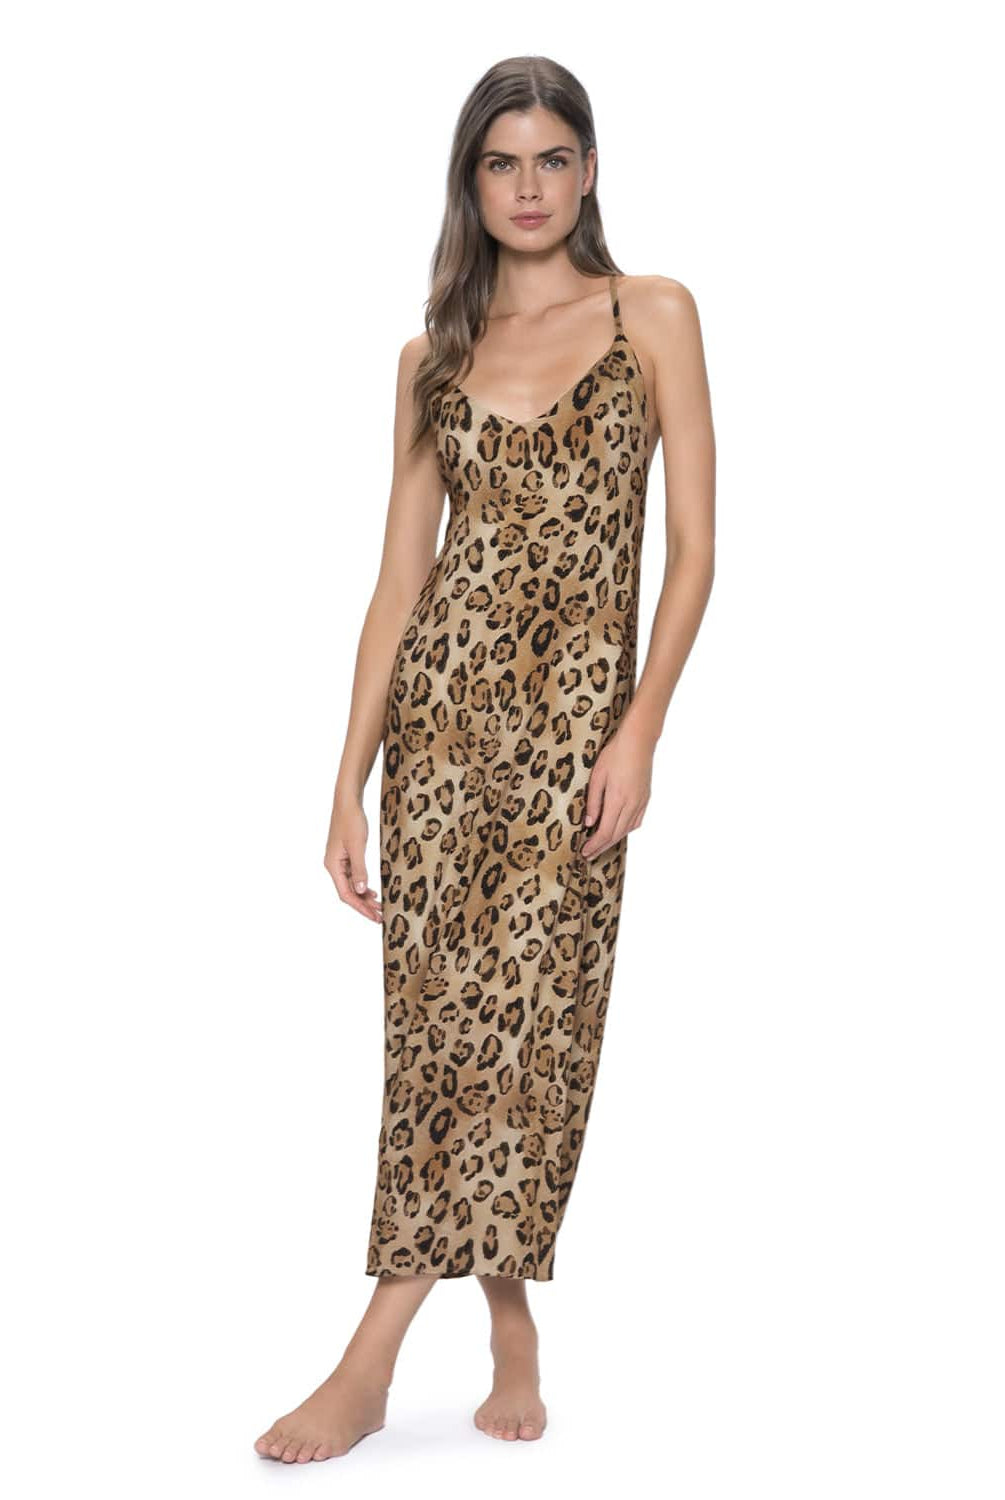 Woman Wearing Leopard Slip Dress